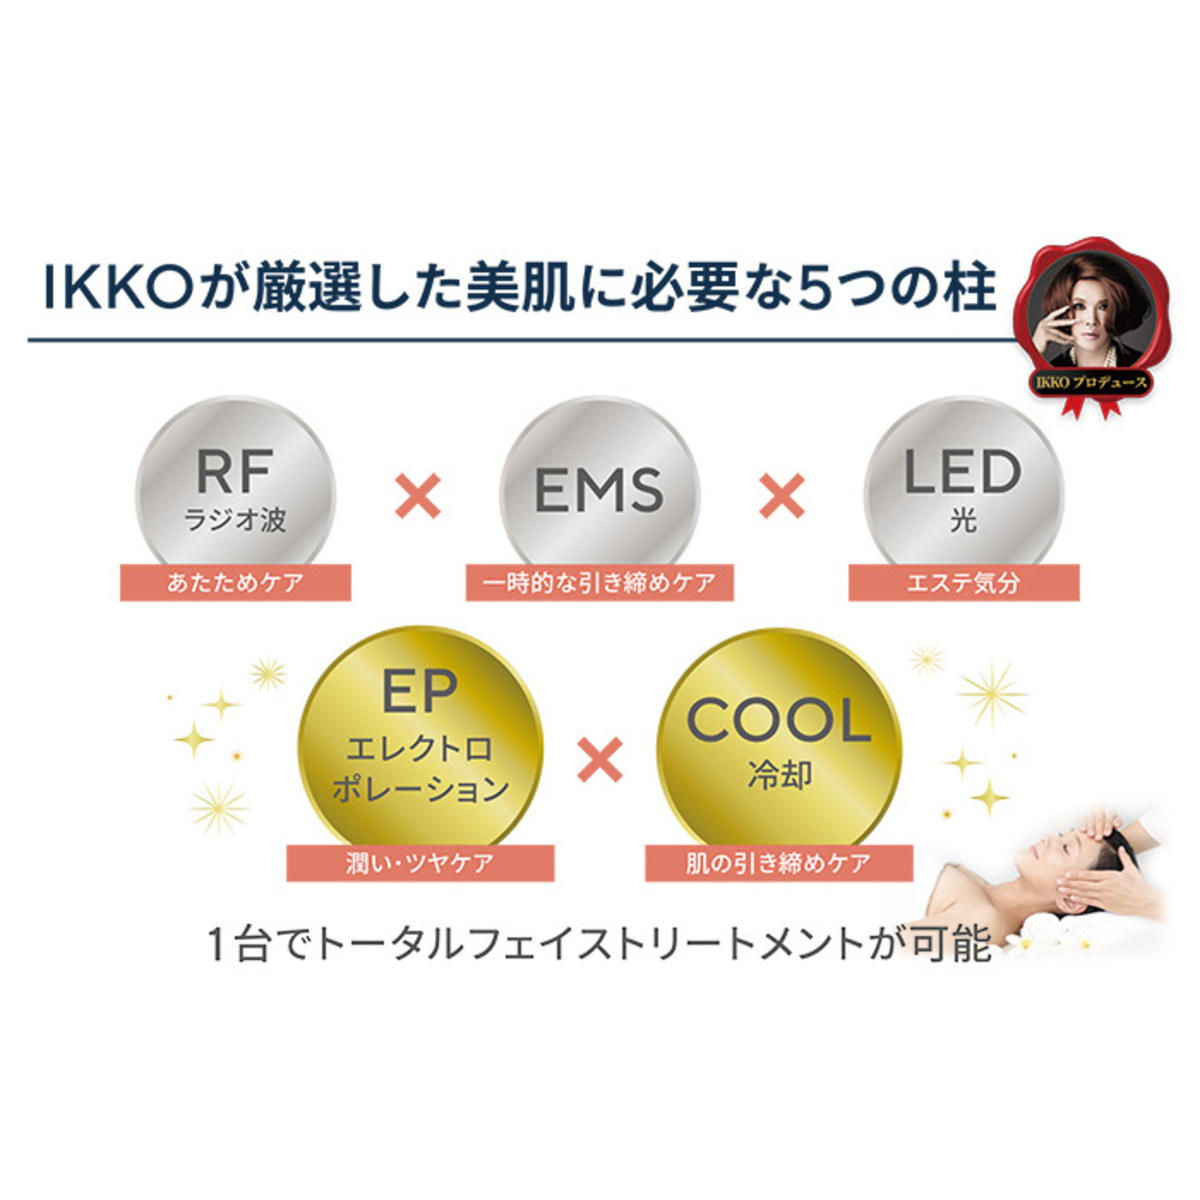 IKKOプロデュース MEラボン ジェル付セット - QVC.jp